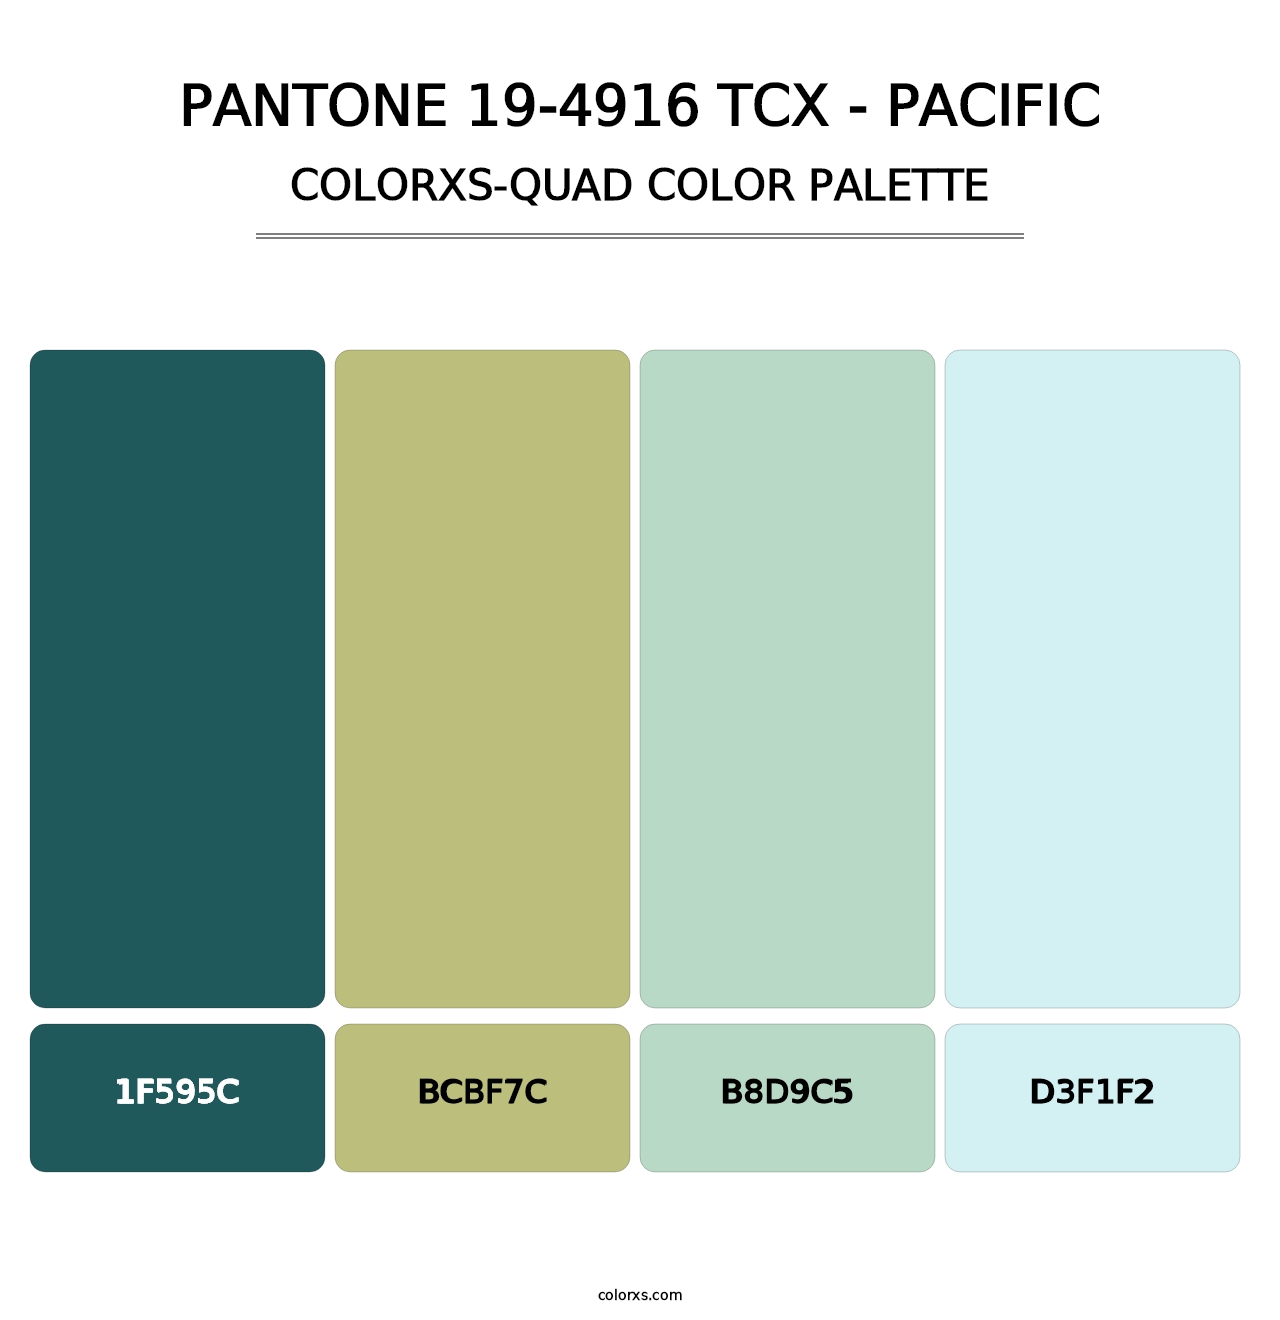 PANTONE 19-4916 TCX - Pacific - Colorxs Quad Palette